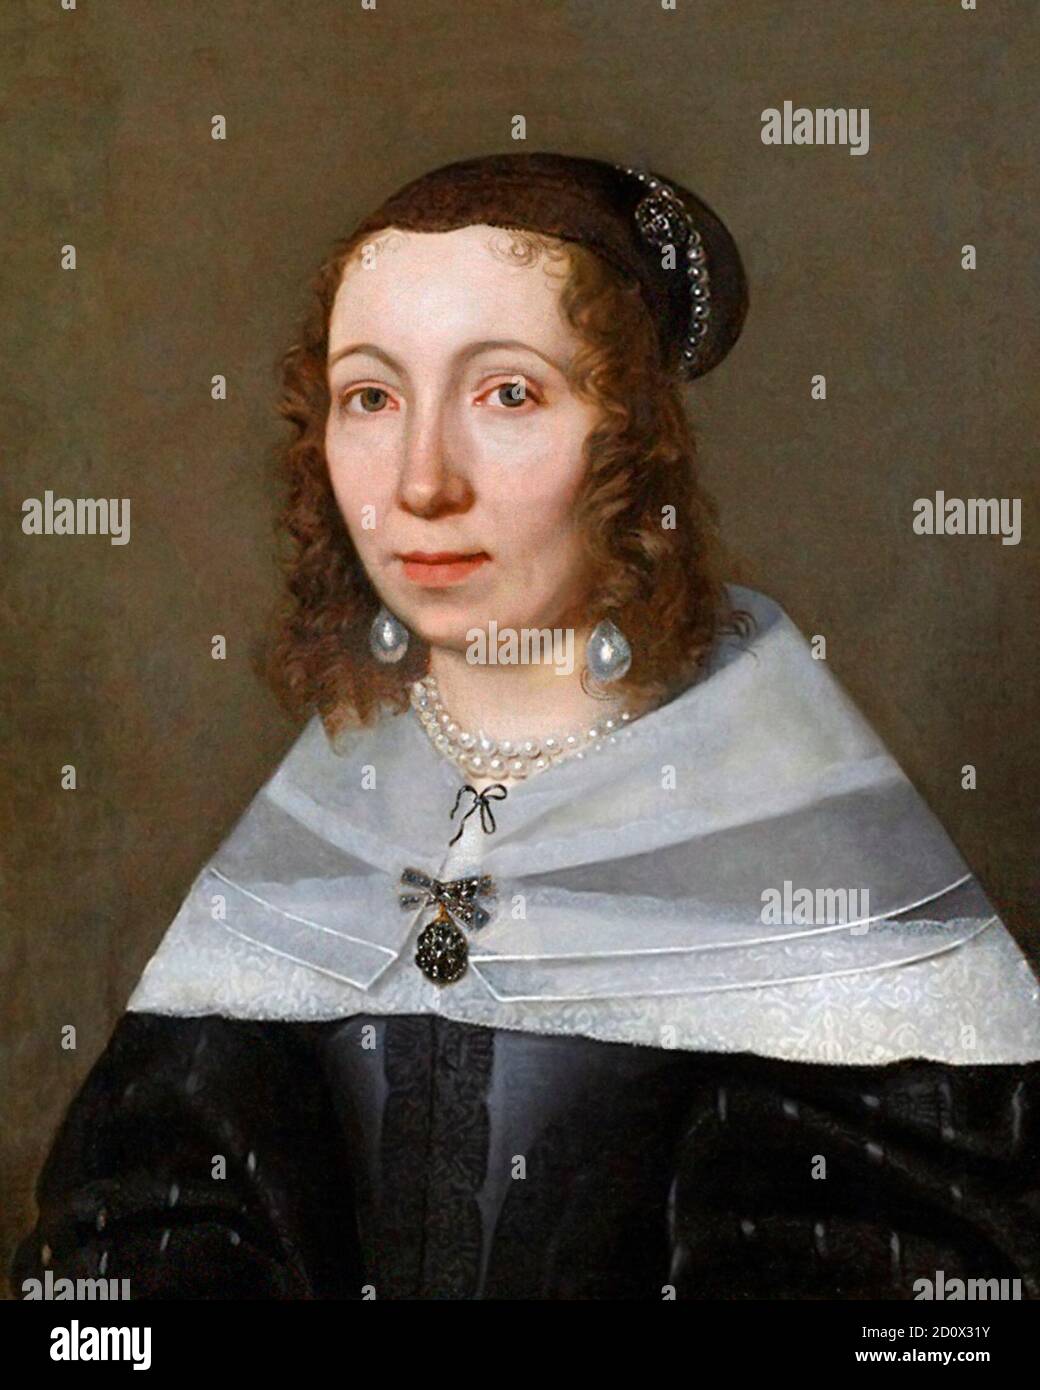 María Sibylla Merian. Retrato de la naturalista nacida en Alemania, María Sibylla Merian (1647-1717) por Jacob Marrel, 1679 Foto de stock